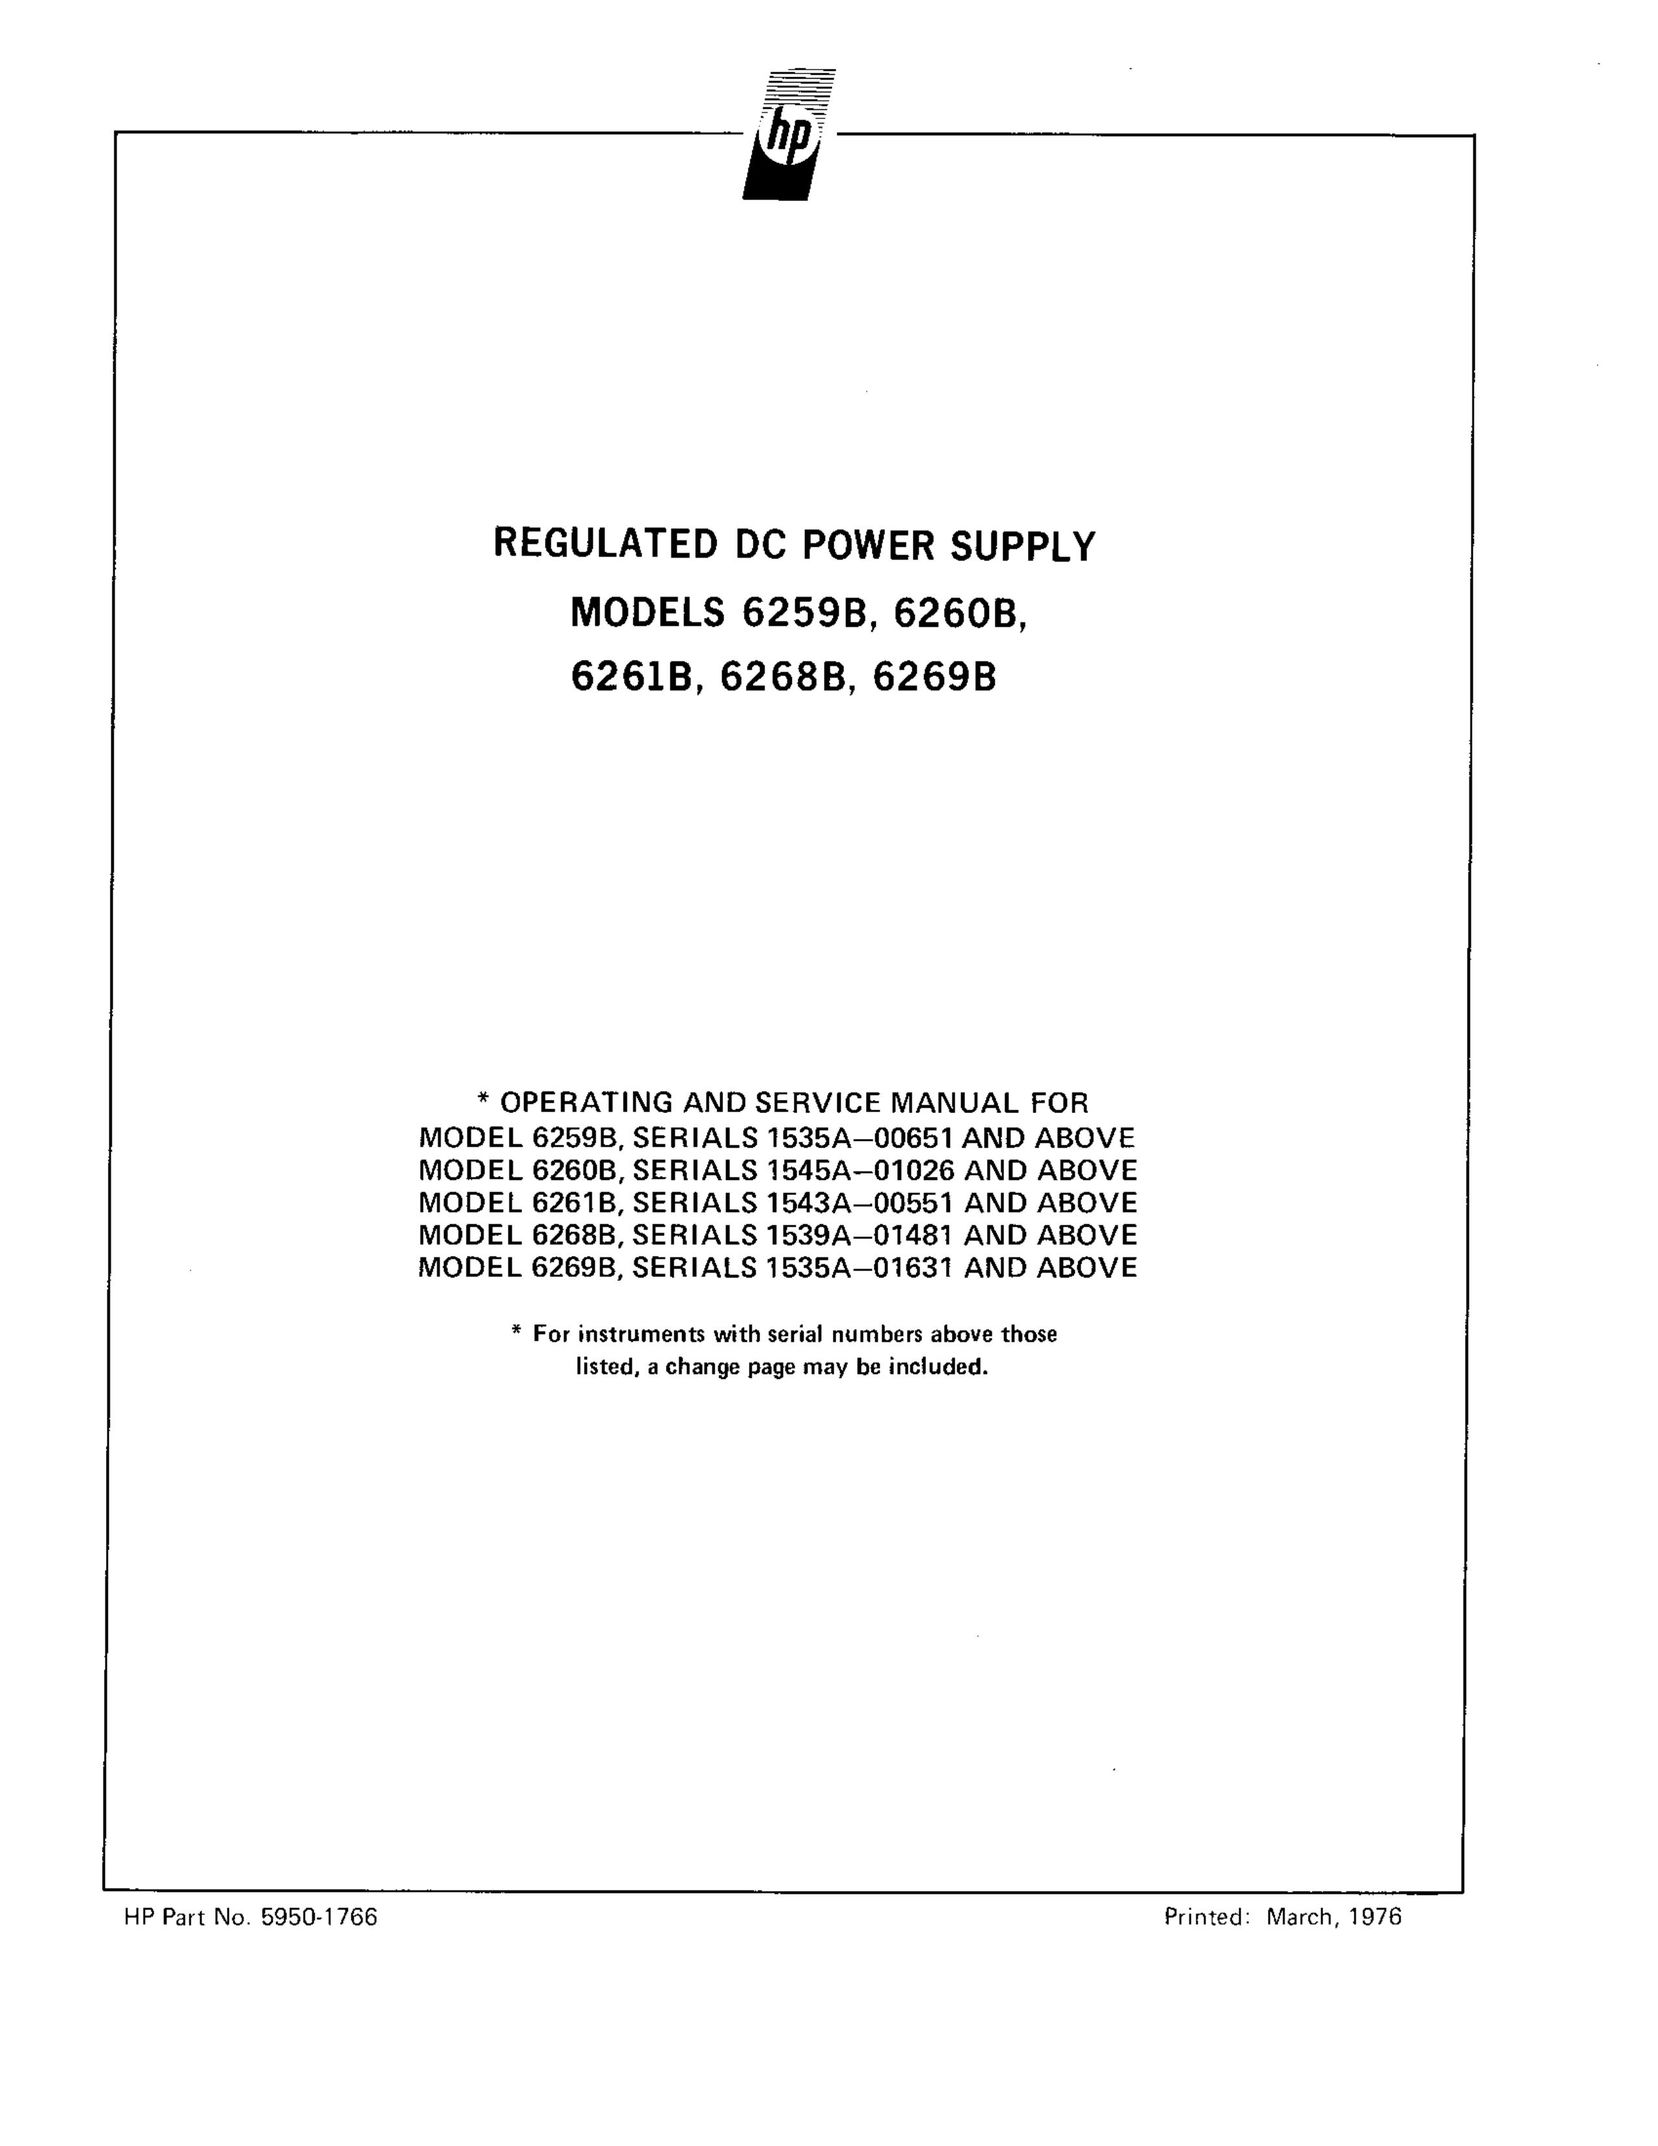 HP (Hewlett-Packard) 6260B Power Supply User Manual